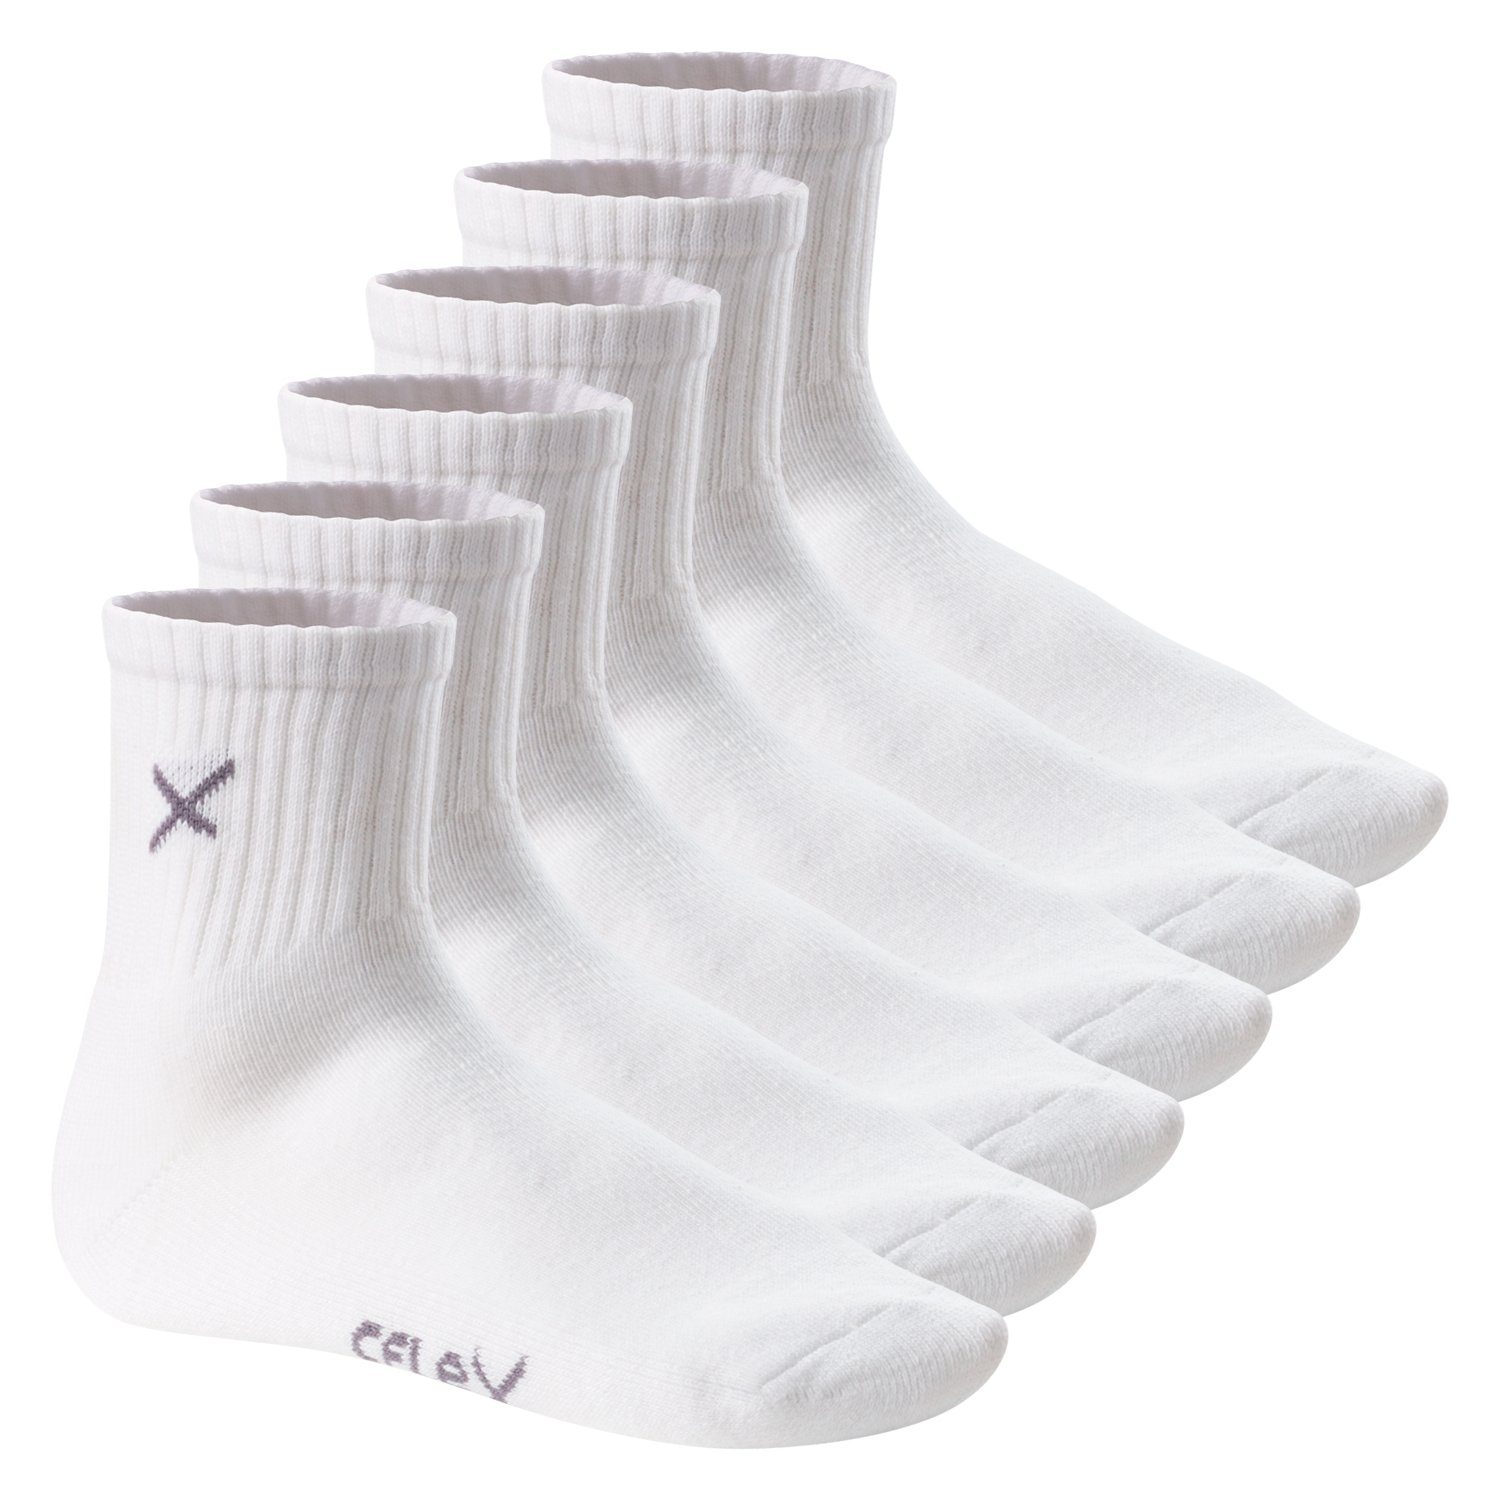 & Lifestyle Crew Herren (6 White Short Damen Sportsocken Paar) Socks CFLEX